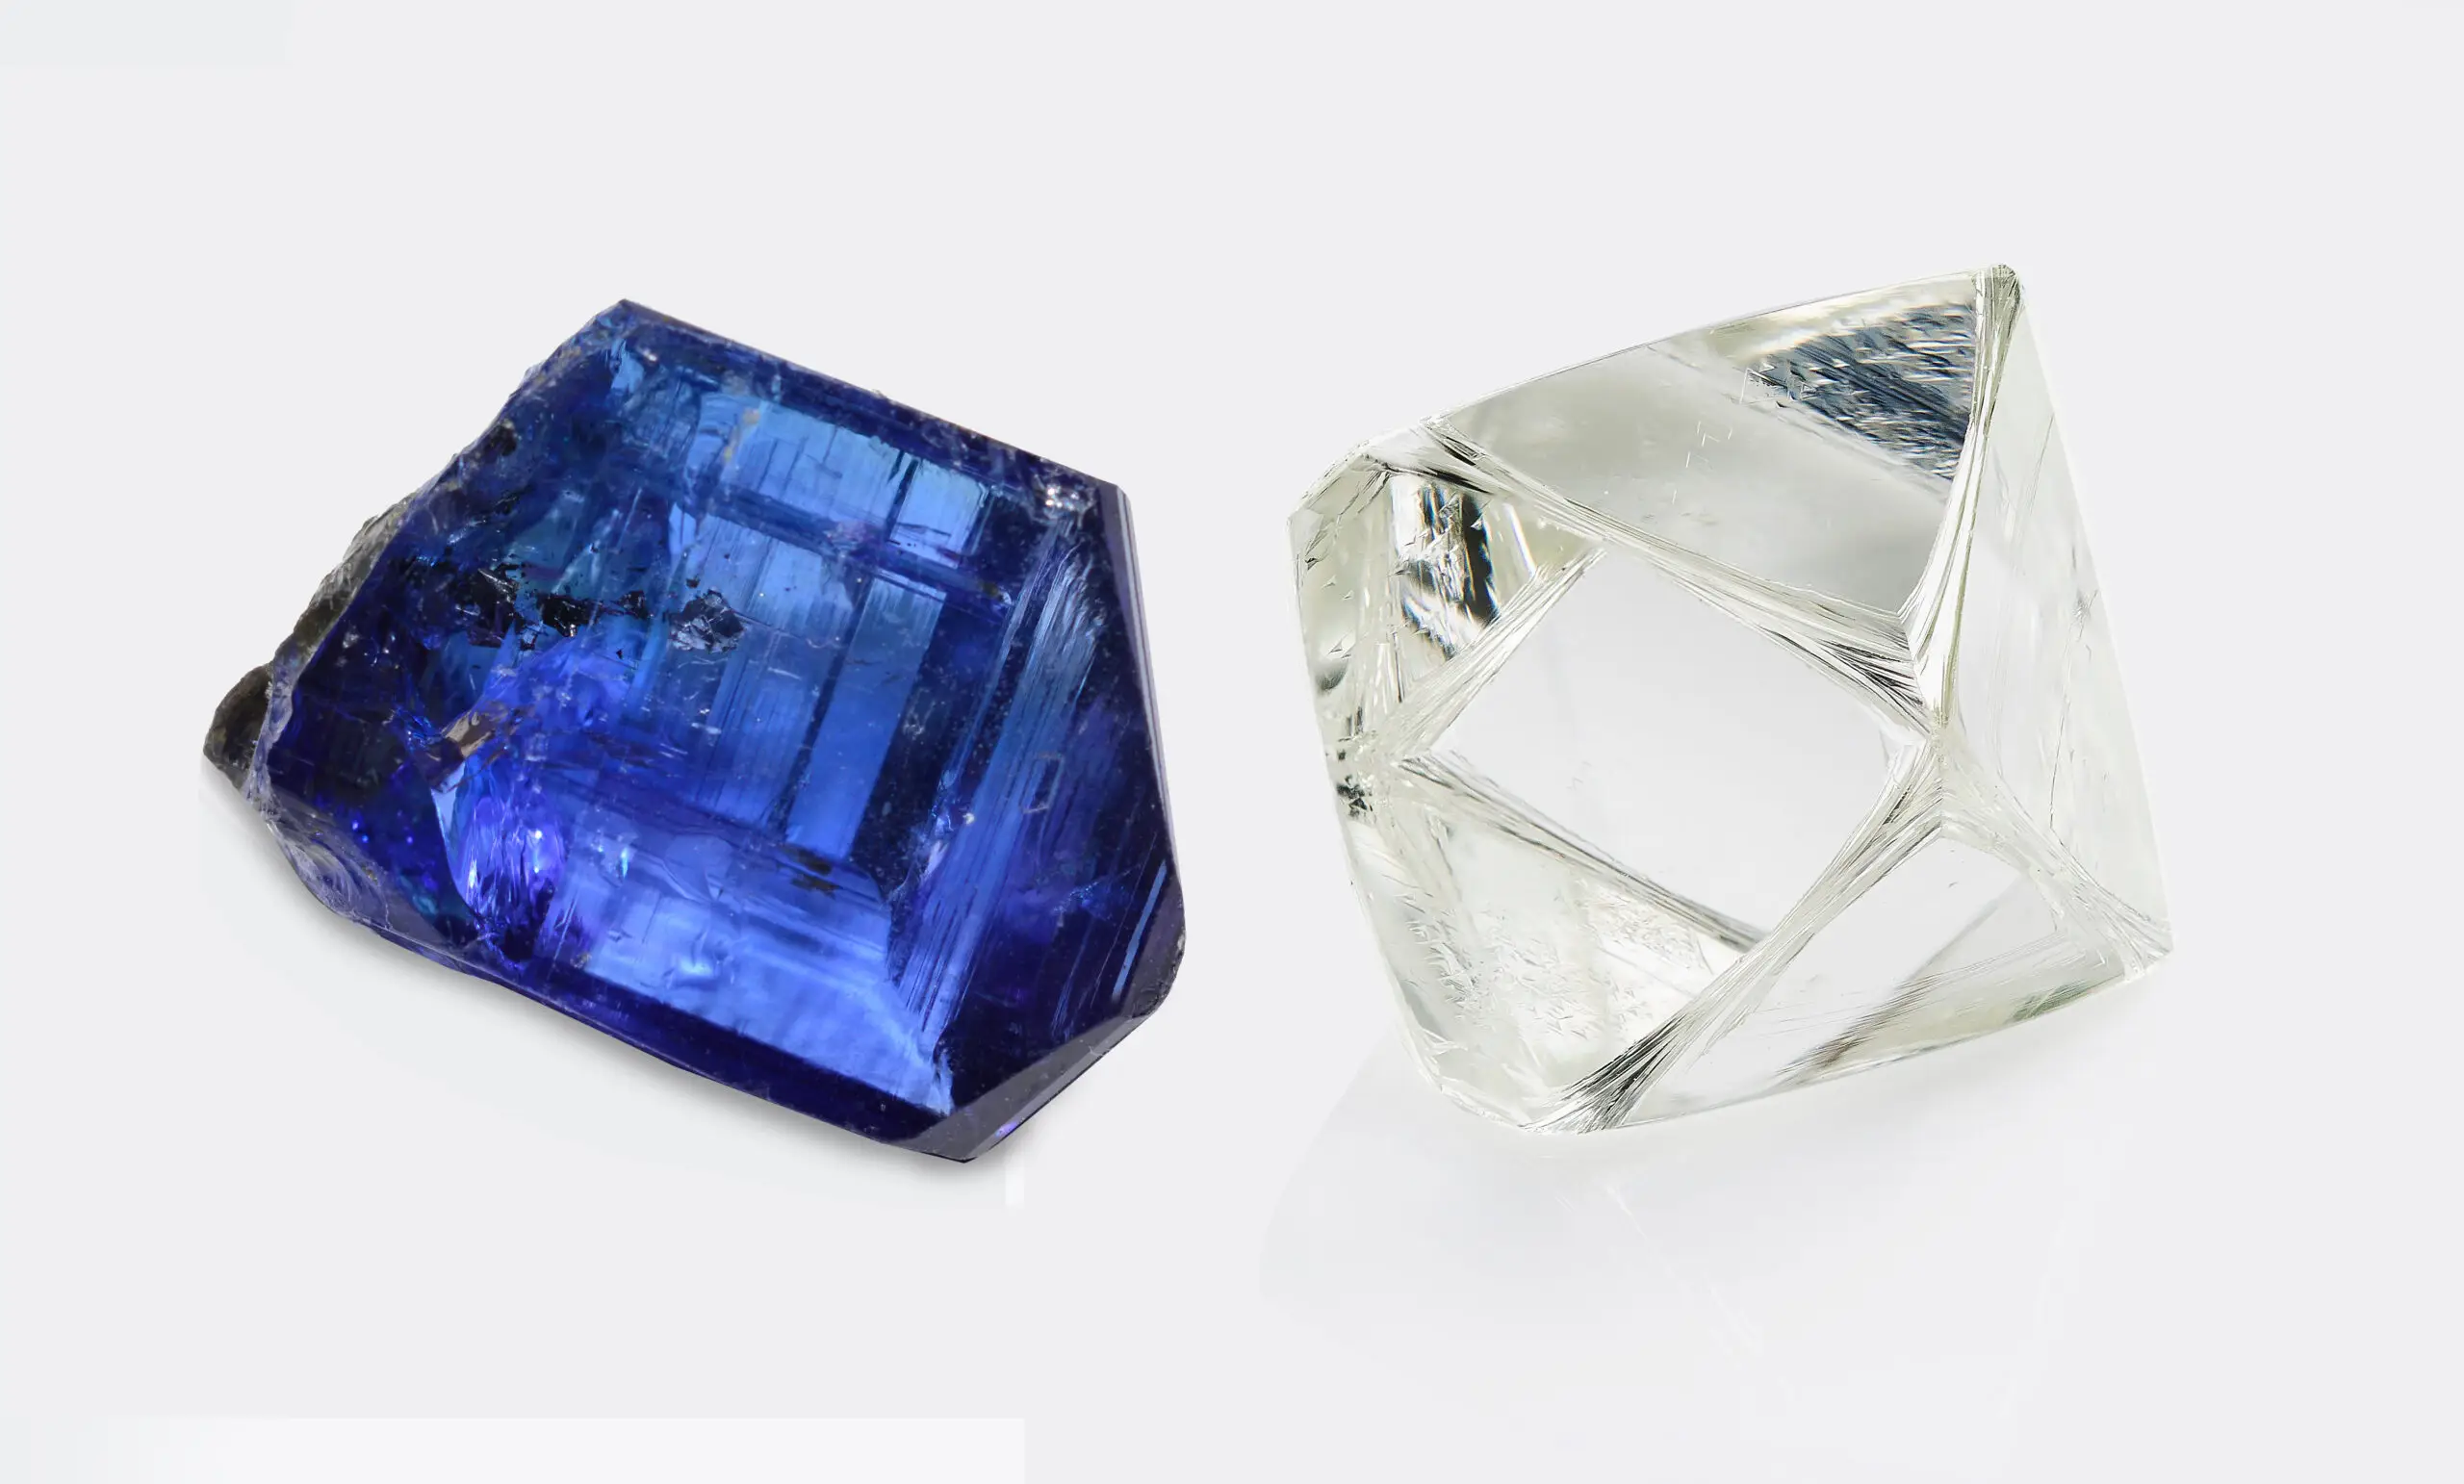 Tanzanite vs Diamond: which stone is more valuable?